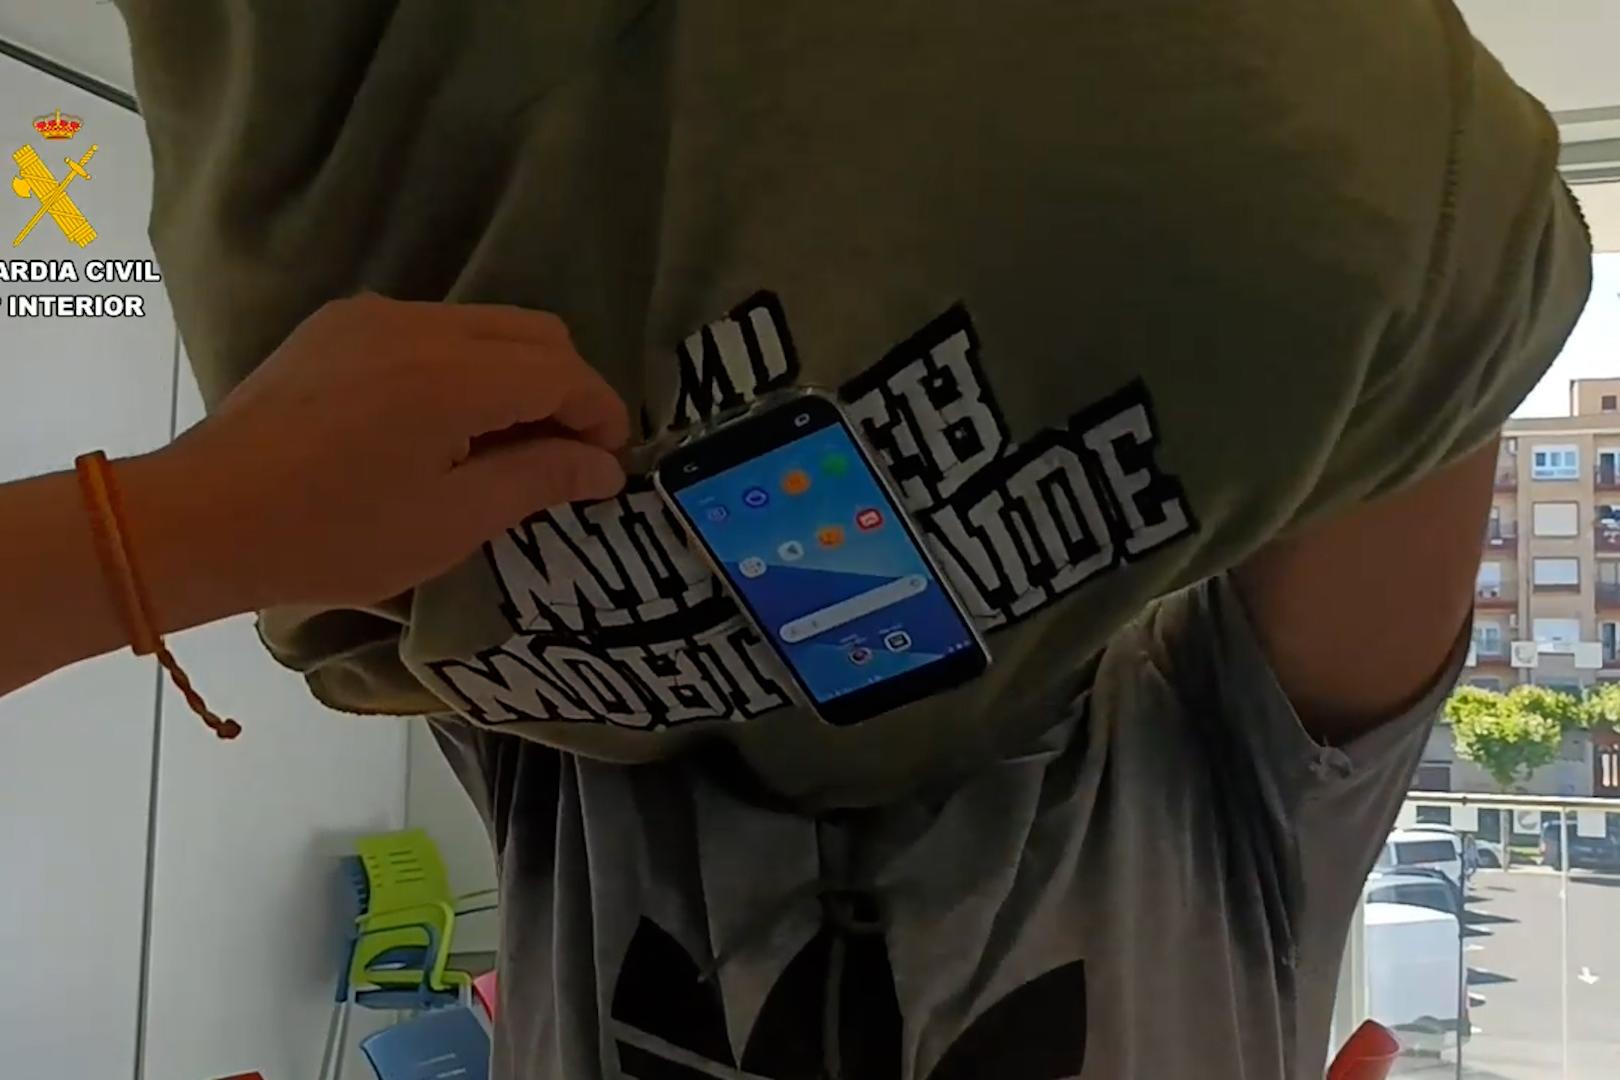 Imagen de uno de los detenidos donde se ve el móvil que ocultaba bajo la ropa para obtener de manera fraudulenta la autorización para conducir vehículos a motor